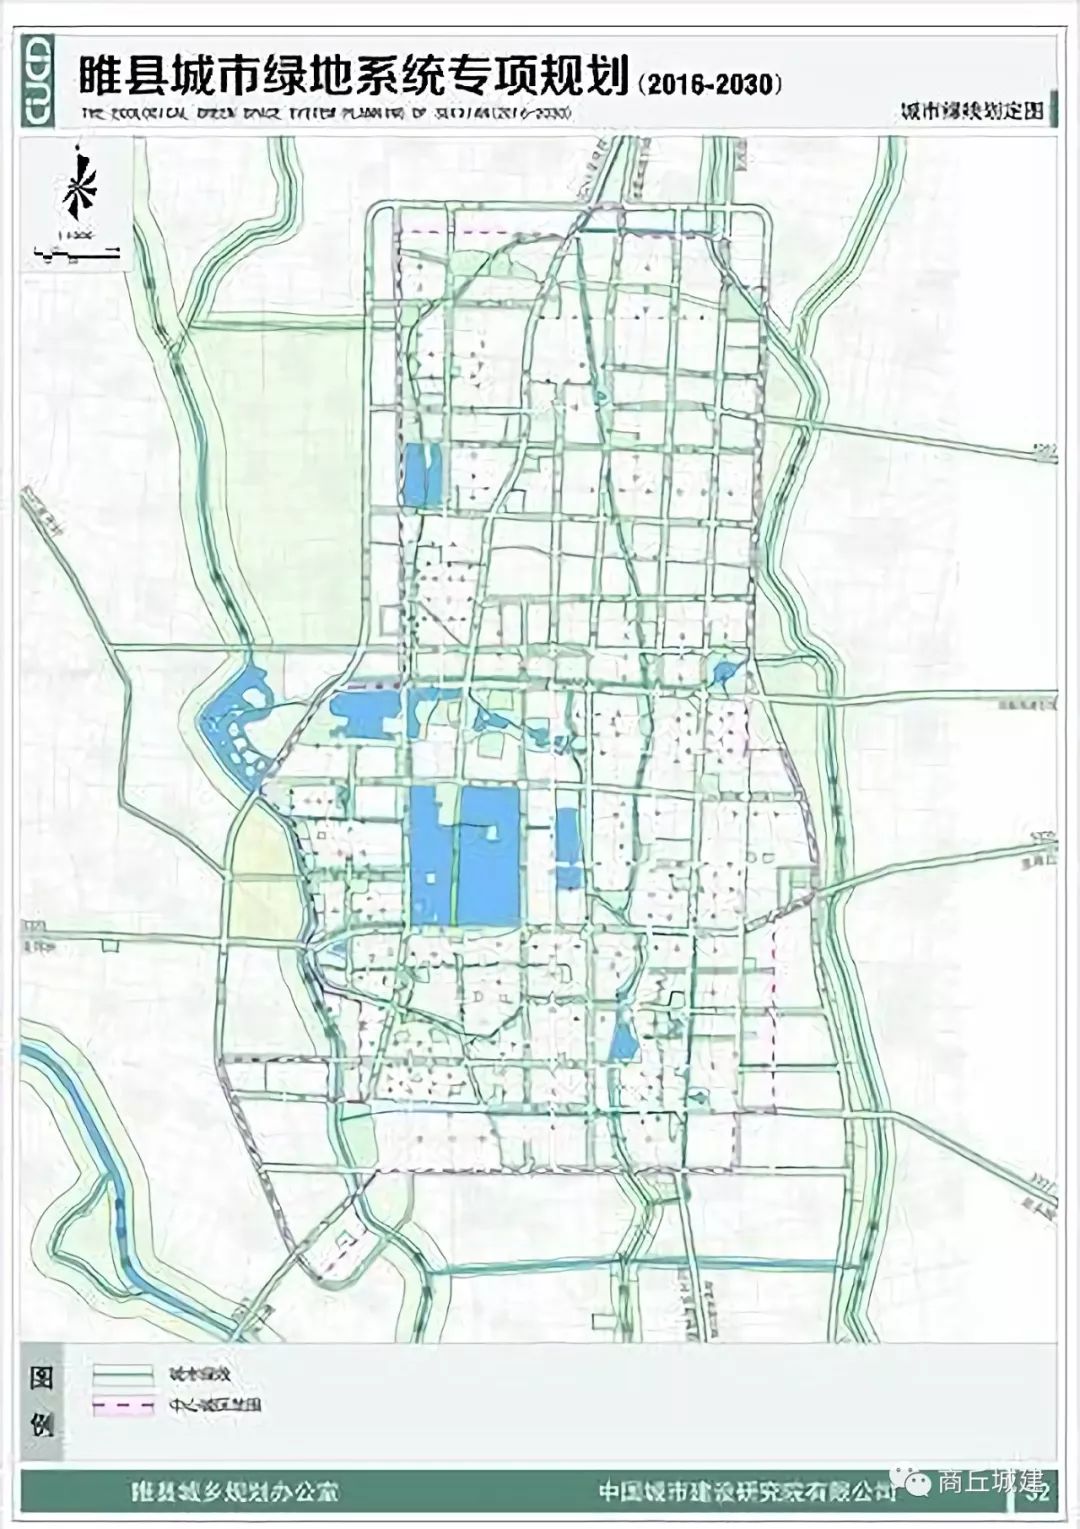 商丘市睢县城乡总体规划(2016-2030)